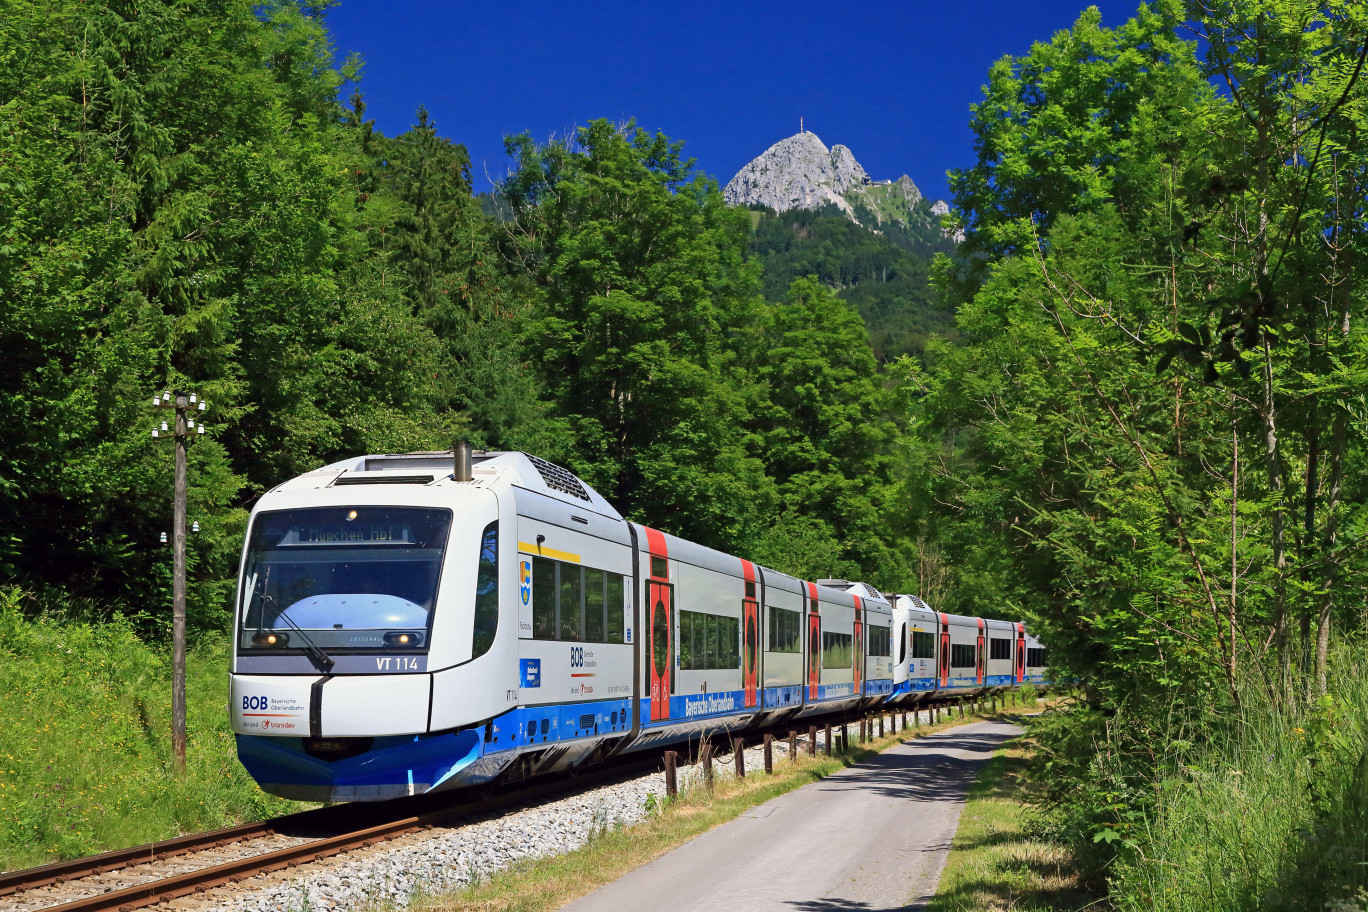 En Allemagne, Transdev détient 7% de parts de marché sur le transport ferroviaire. © Bob Fotograf